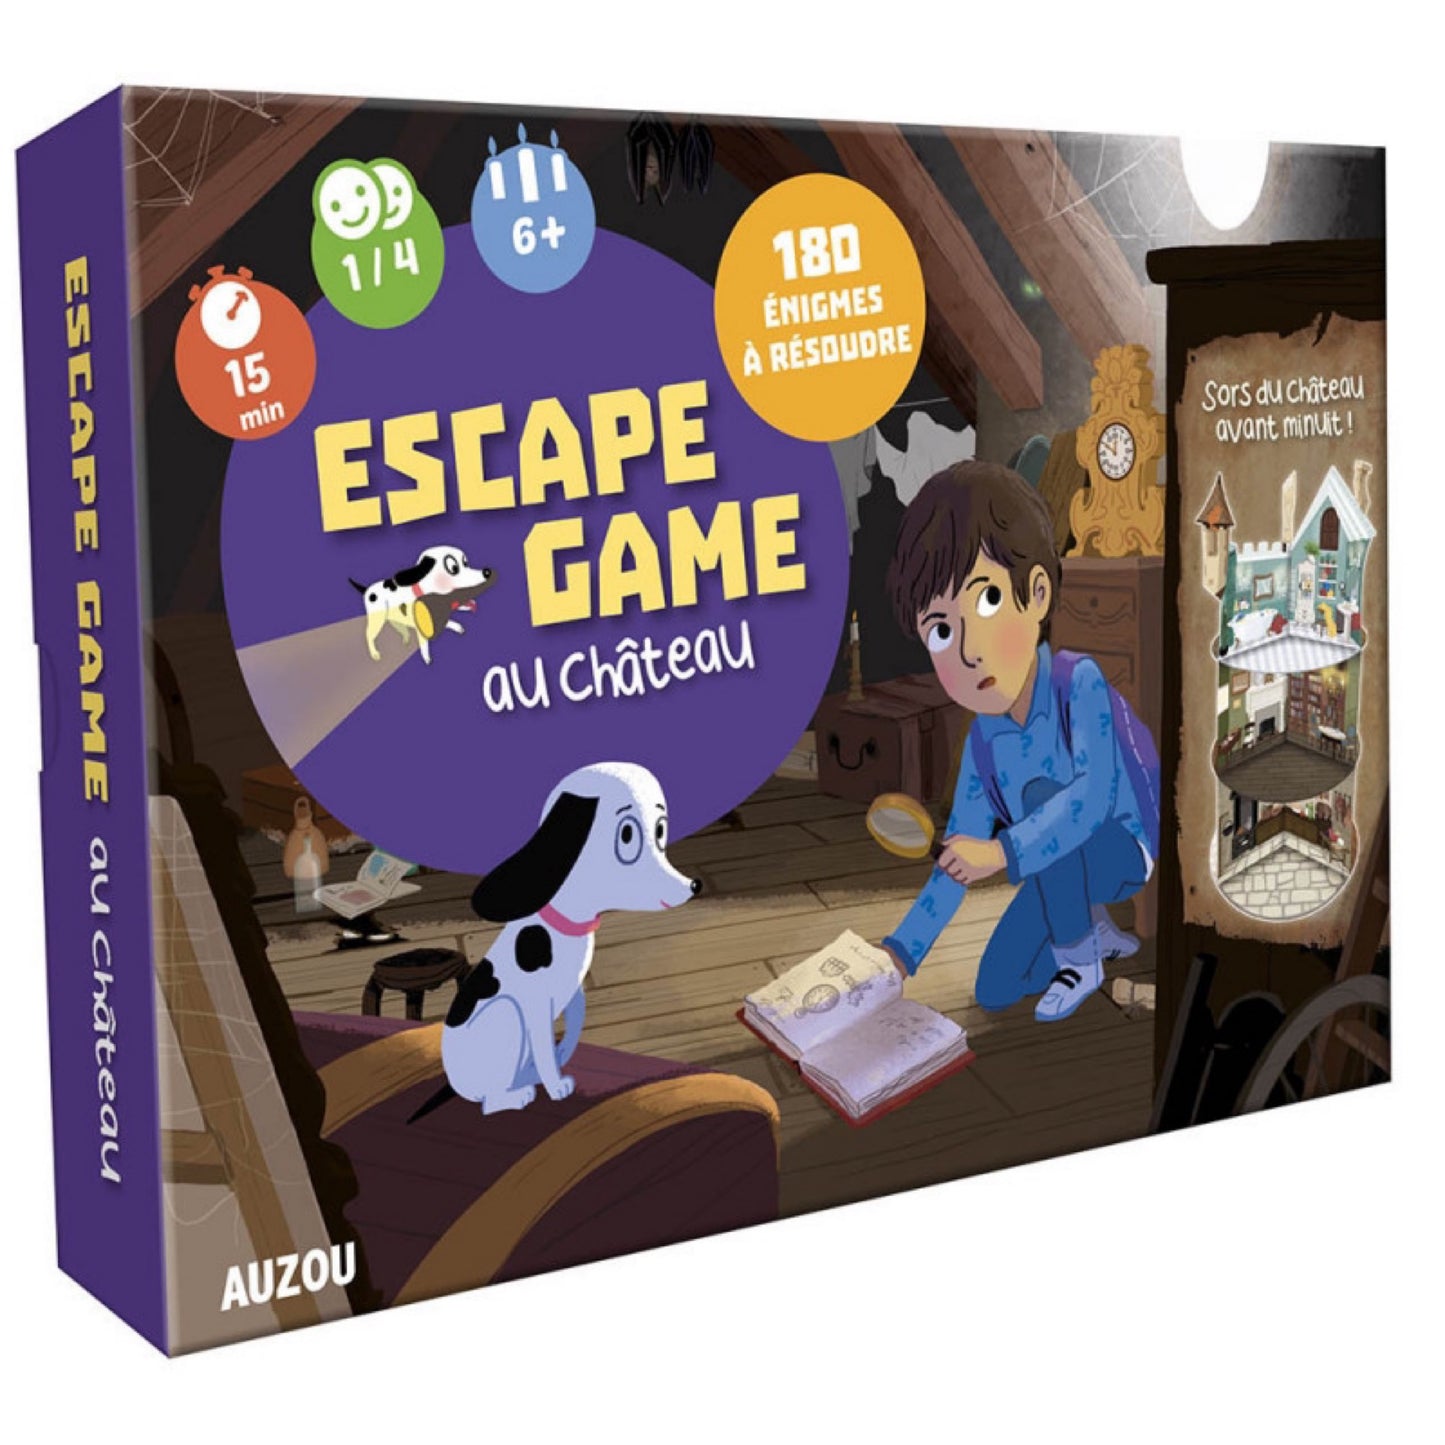 Escape game au château - Auzou